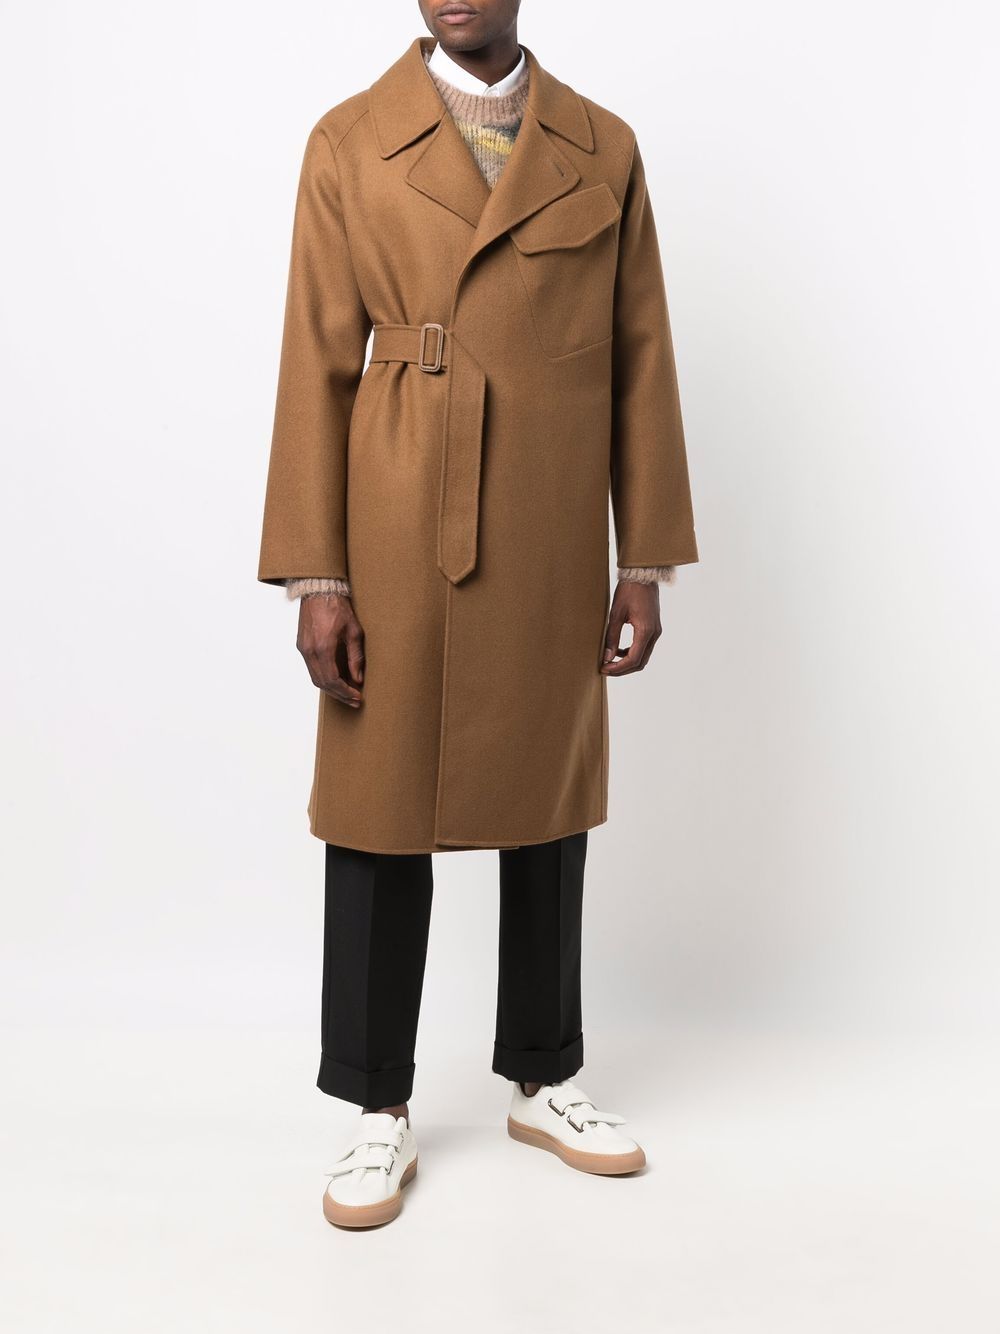 фото Mackintosh пальто laggan с поясом